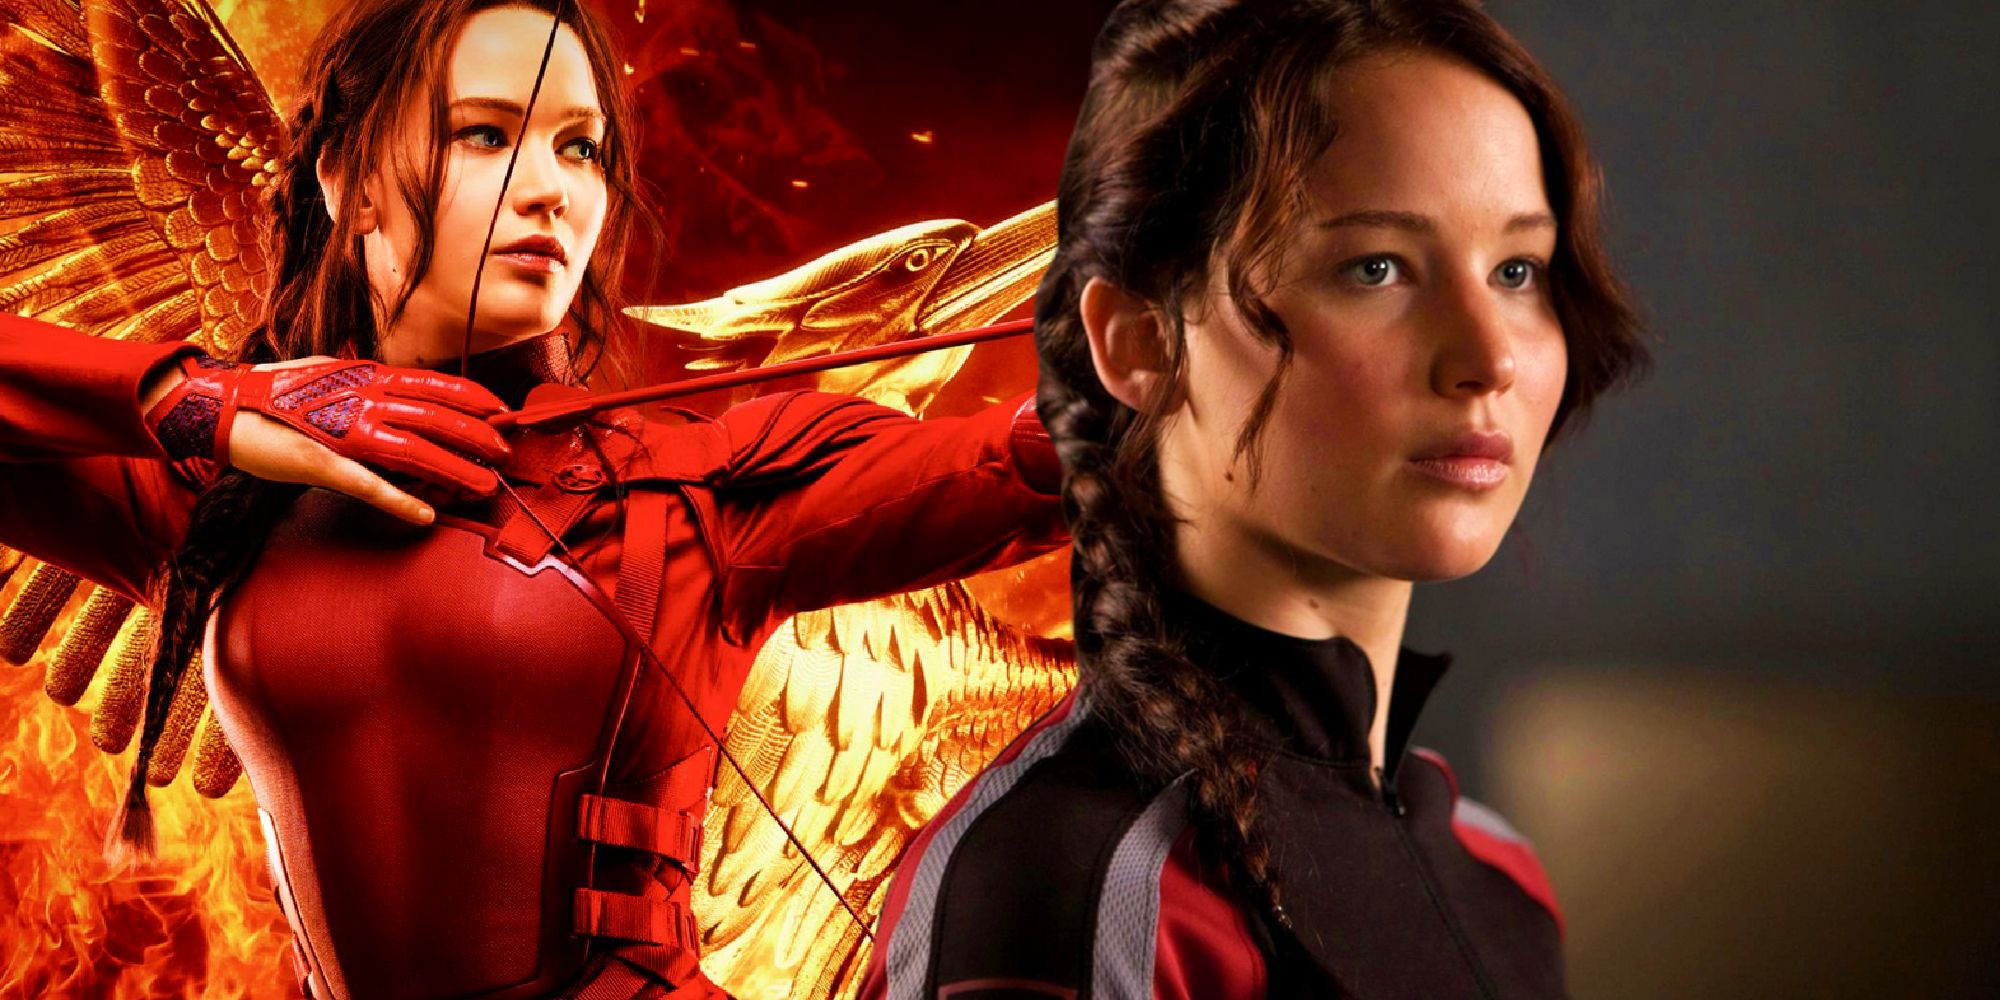 El regreso de Los juegos del hambre de Jennifer Lawrence es posible sin arruinar la historia de Katniss